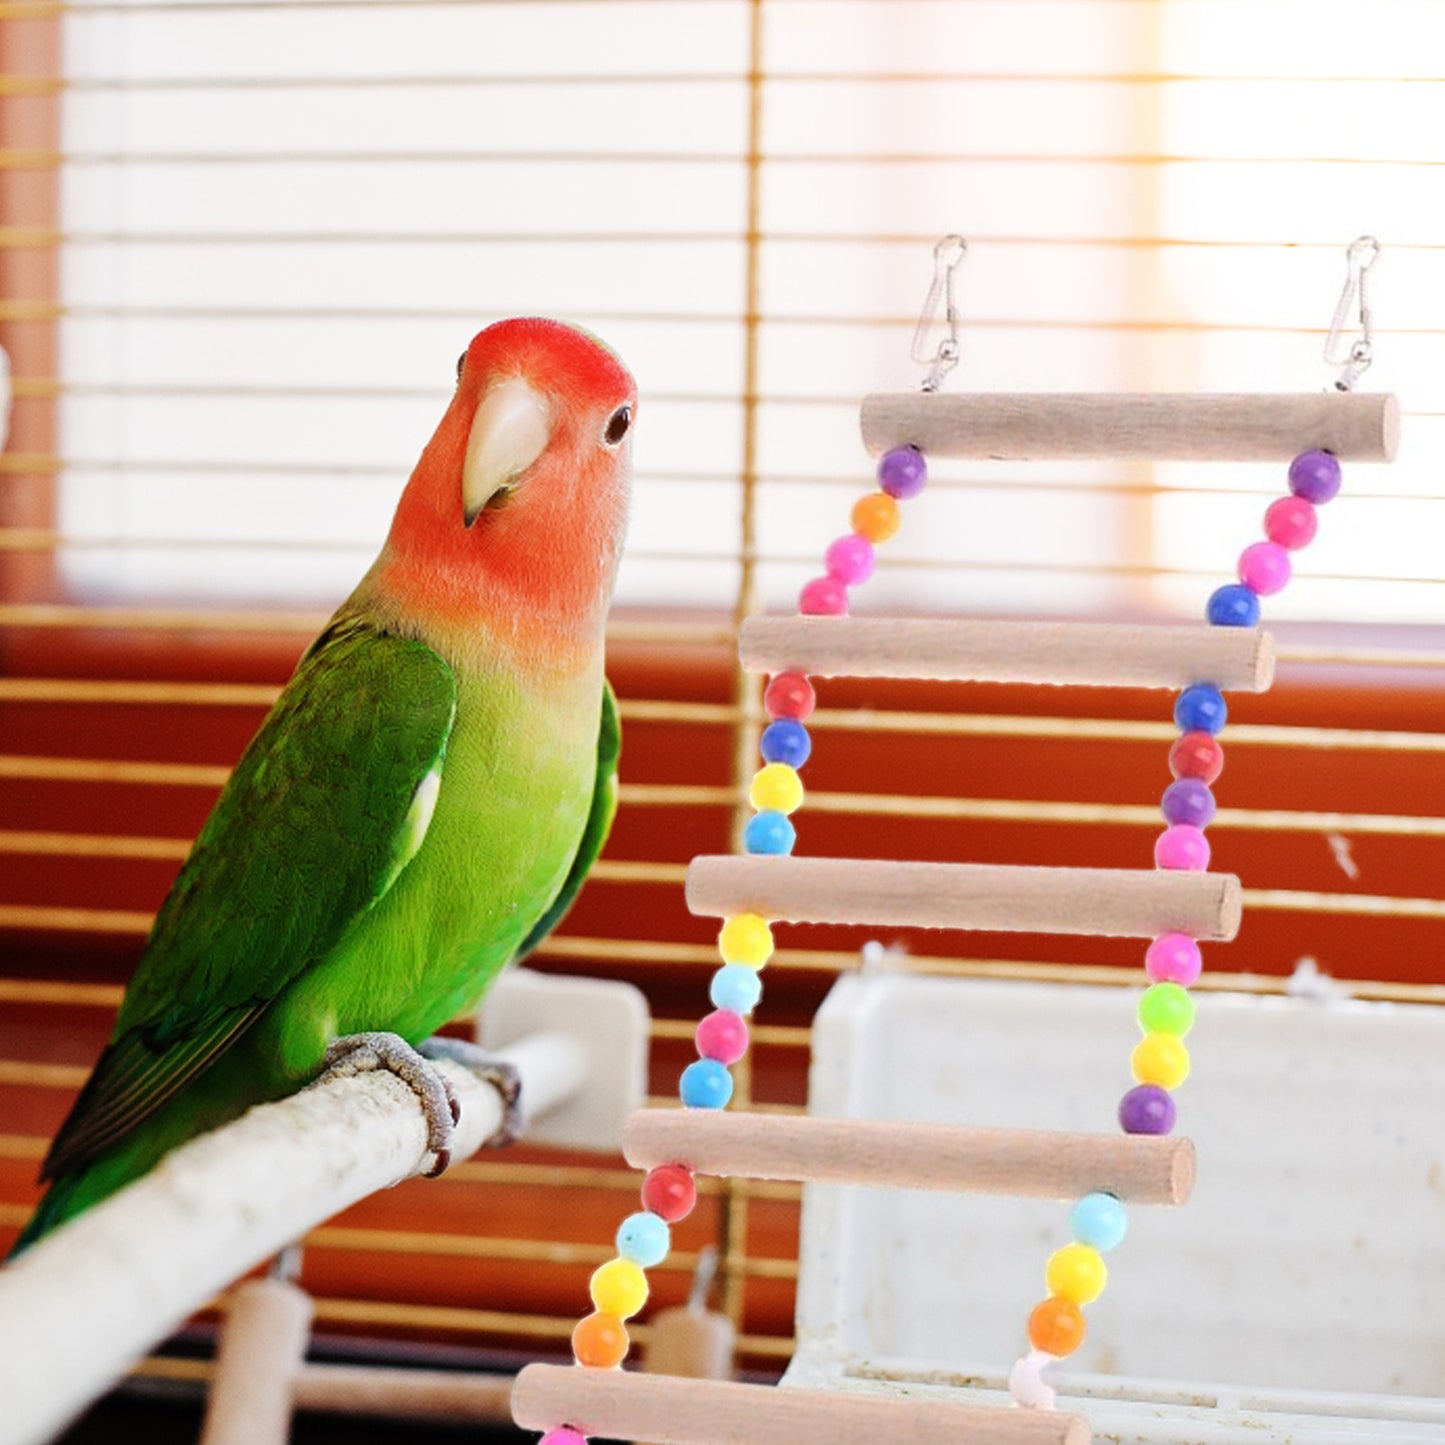 Bird Toys, Wooden Hanging Ladder or Bridge